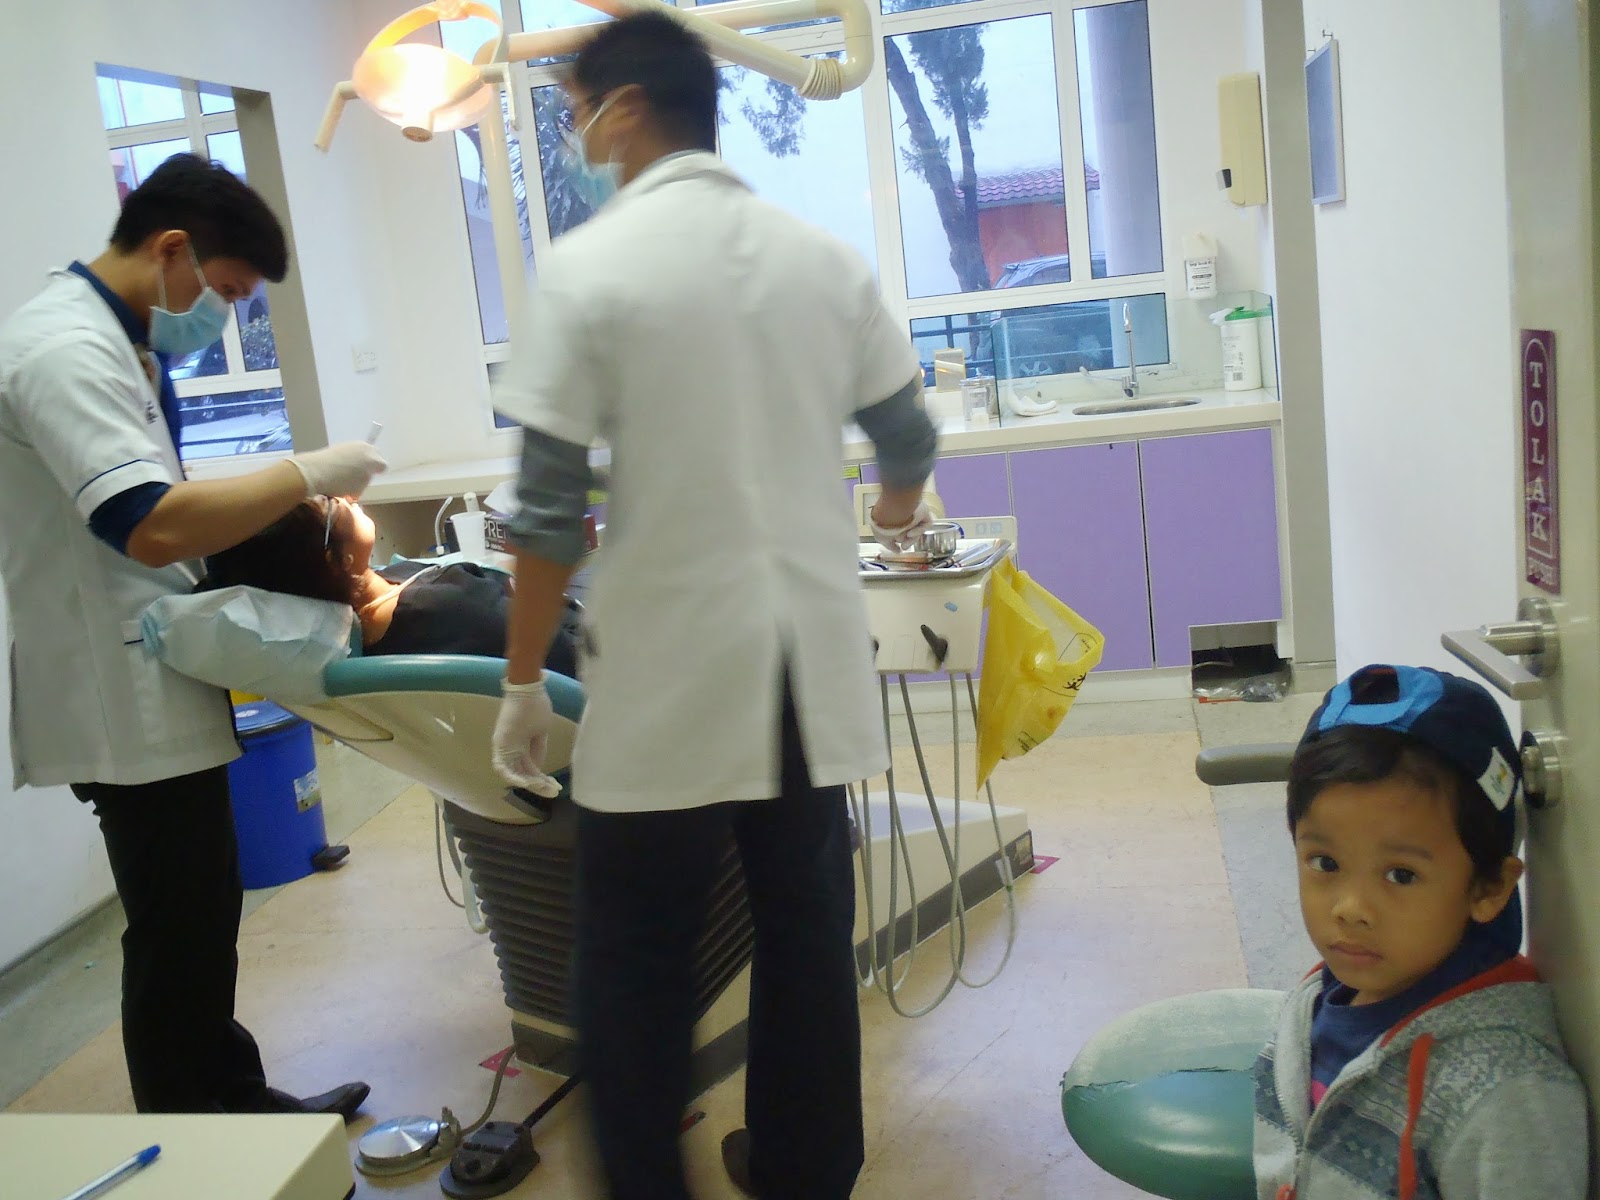 Harga Tampal Gigi Klinik Swasta - Jom Buat Scaling @Klinik Pergigian